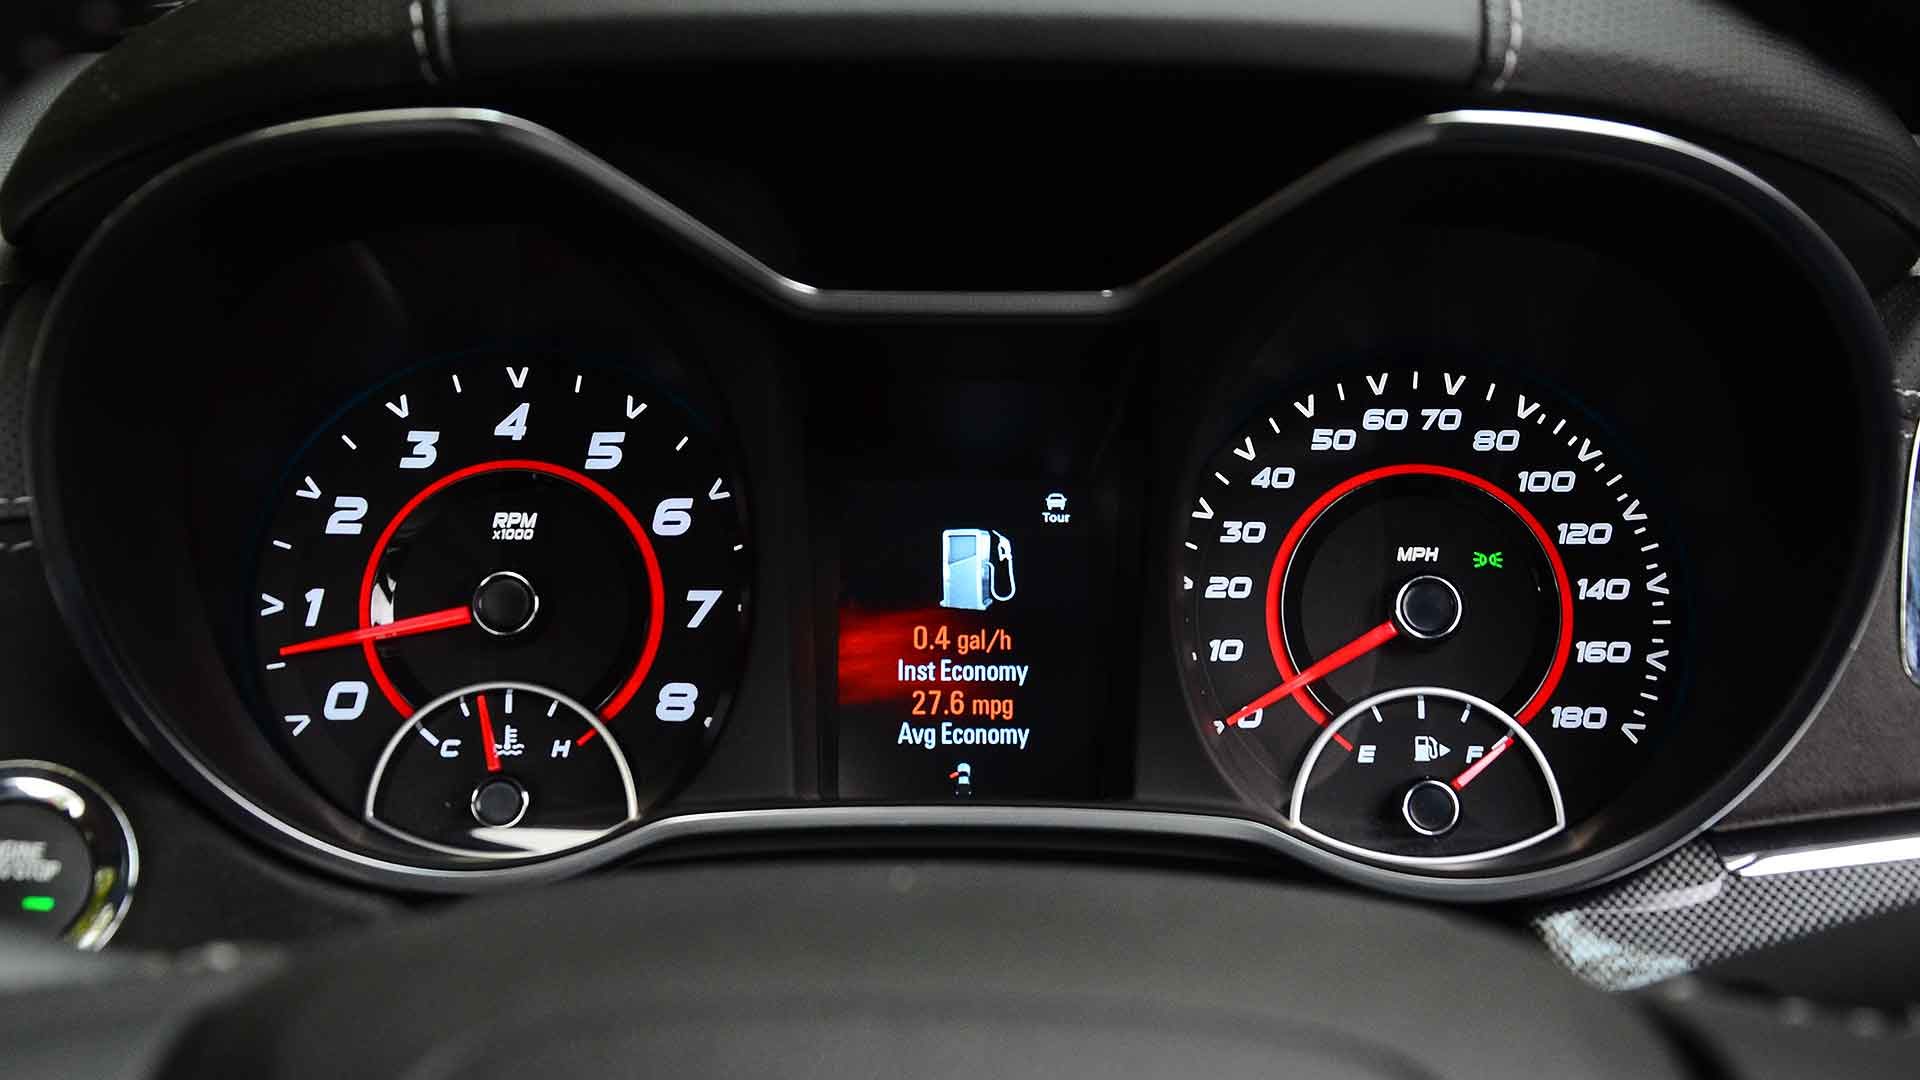 New car fuel consumption display